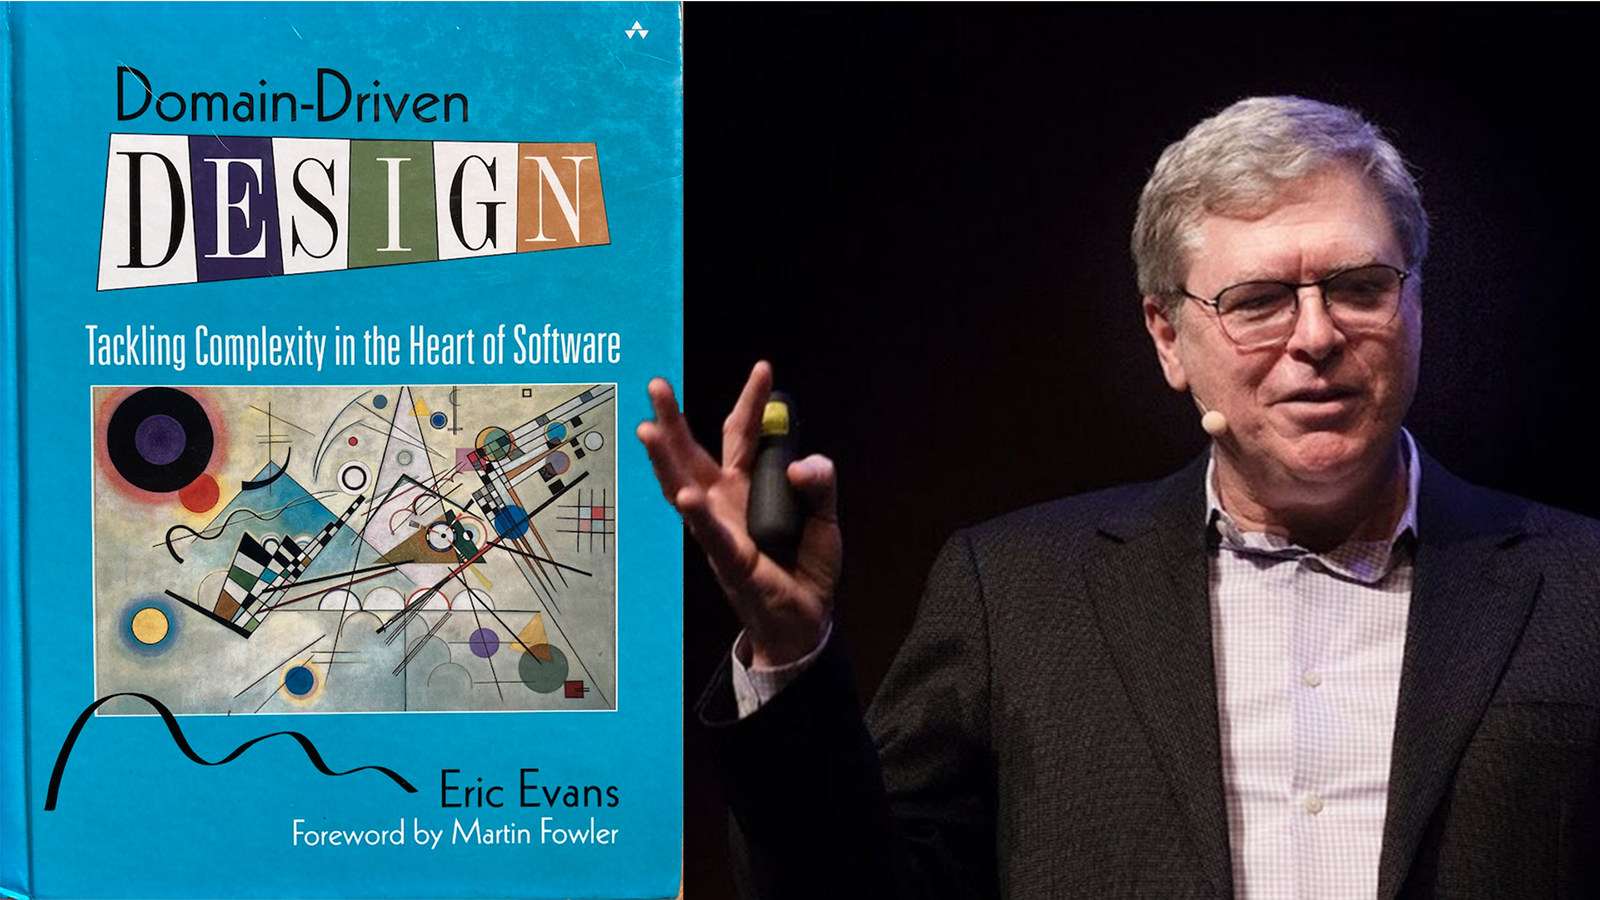 Bild på boken Domain-driven design och författaren Eric Evans